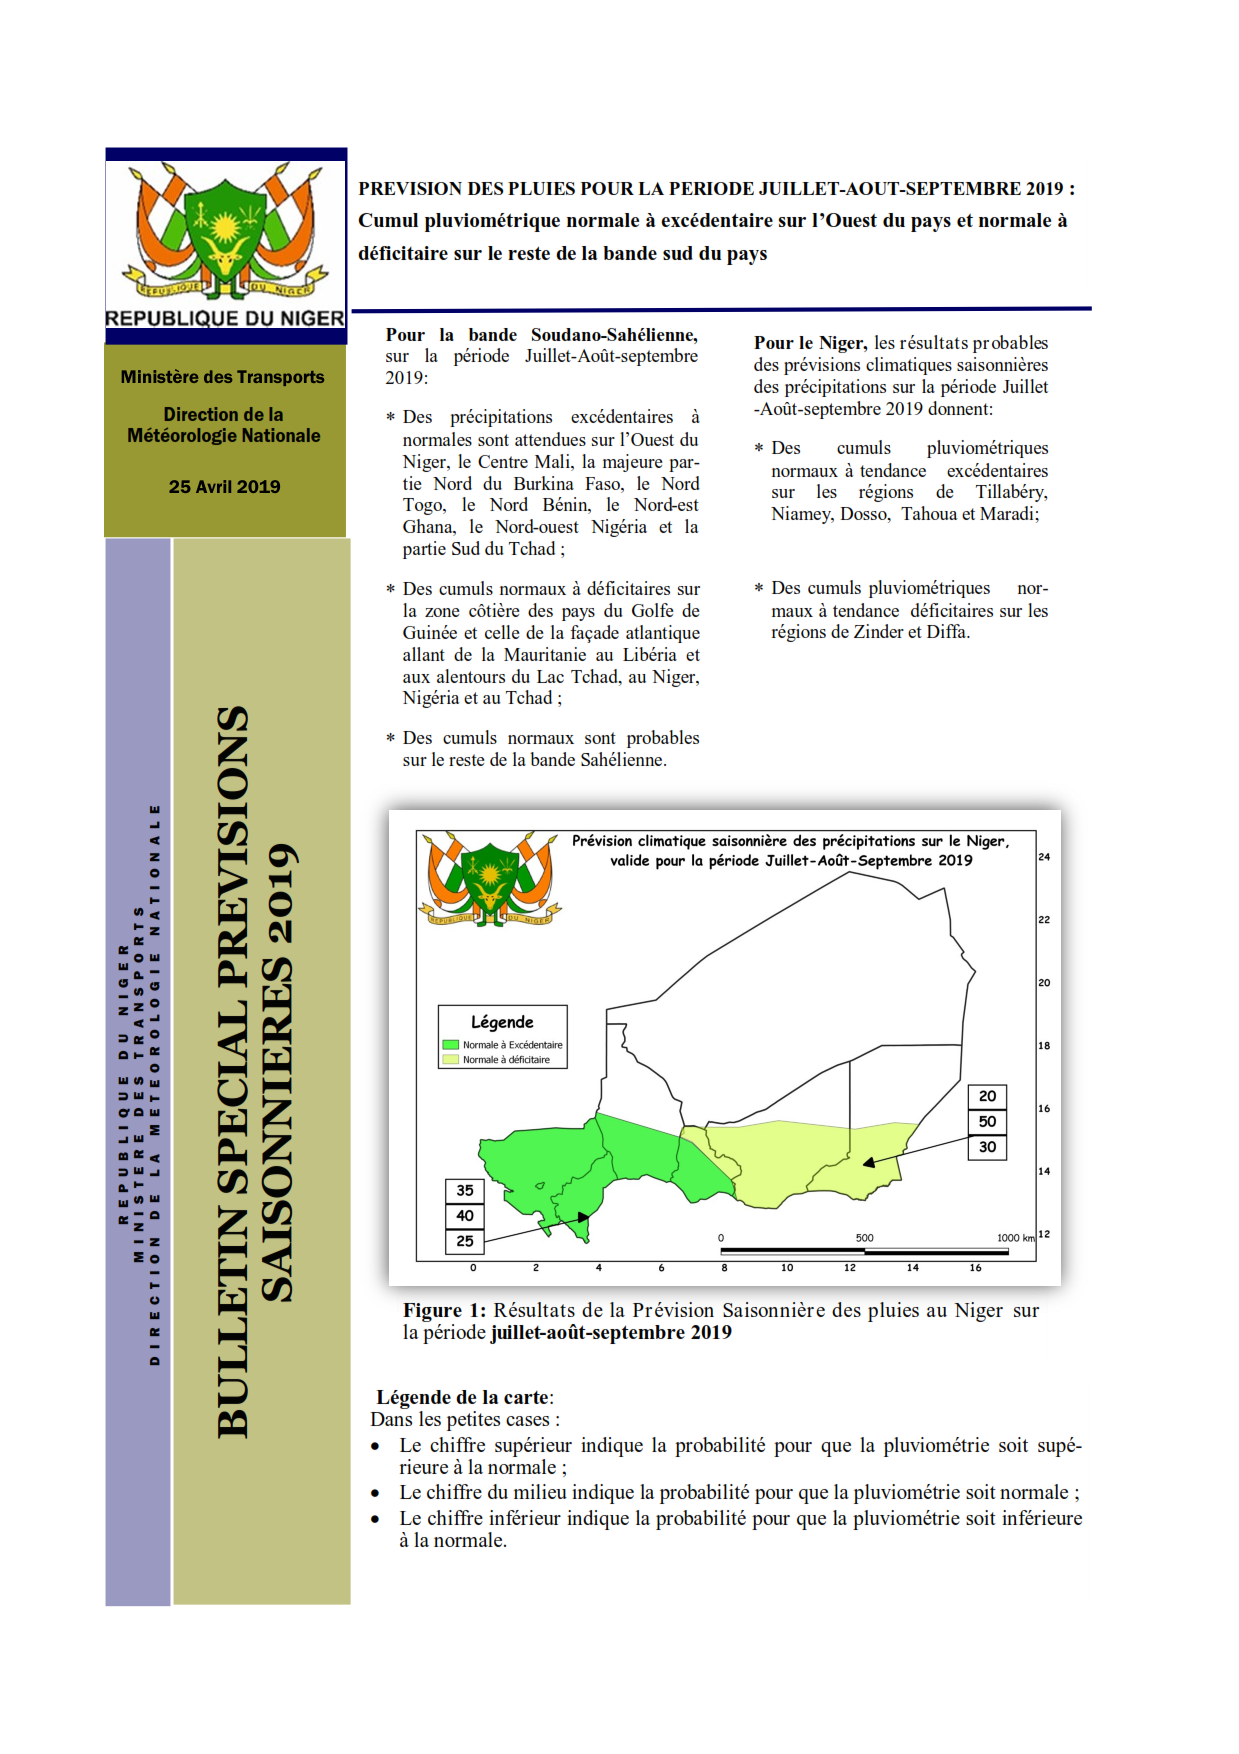 Bulletin de prévision saisonnière agro-météorologique de la saison des pluies 2019 sur le Niger.
Élaboré par la Direction de la Météorologie Nationale du Niger.